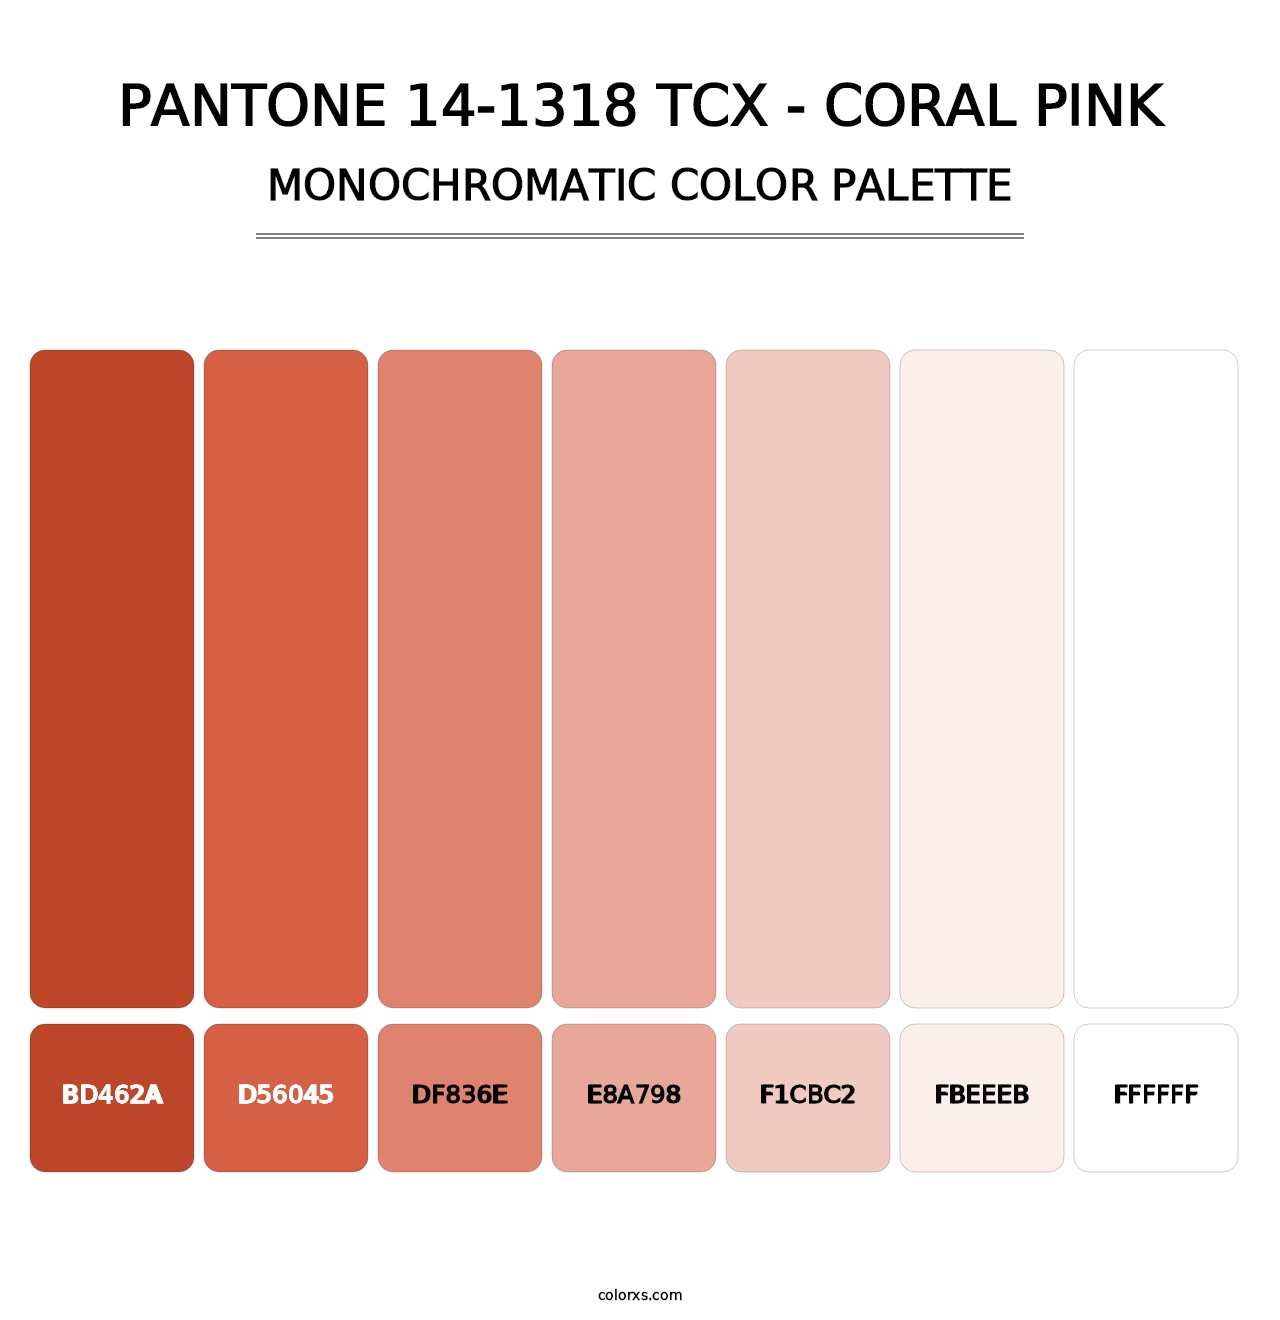 PANTONE 14-1318 TCX - Coral Pink - Monochromatic Color Palette